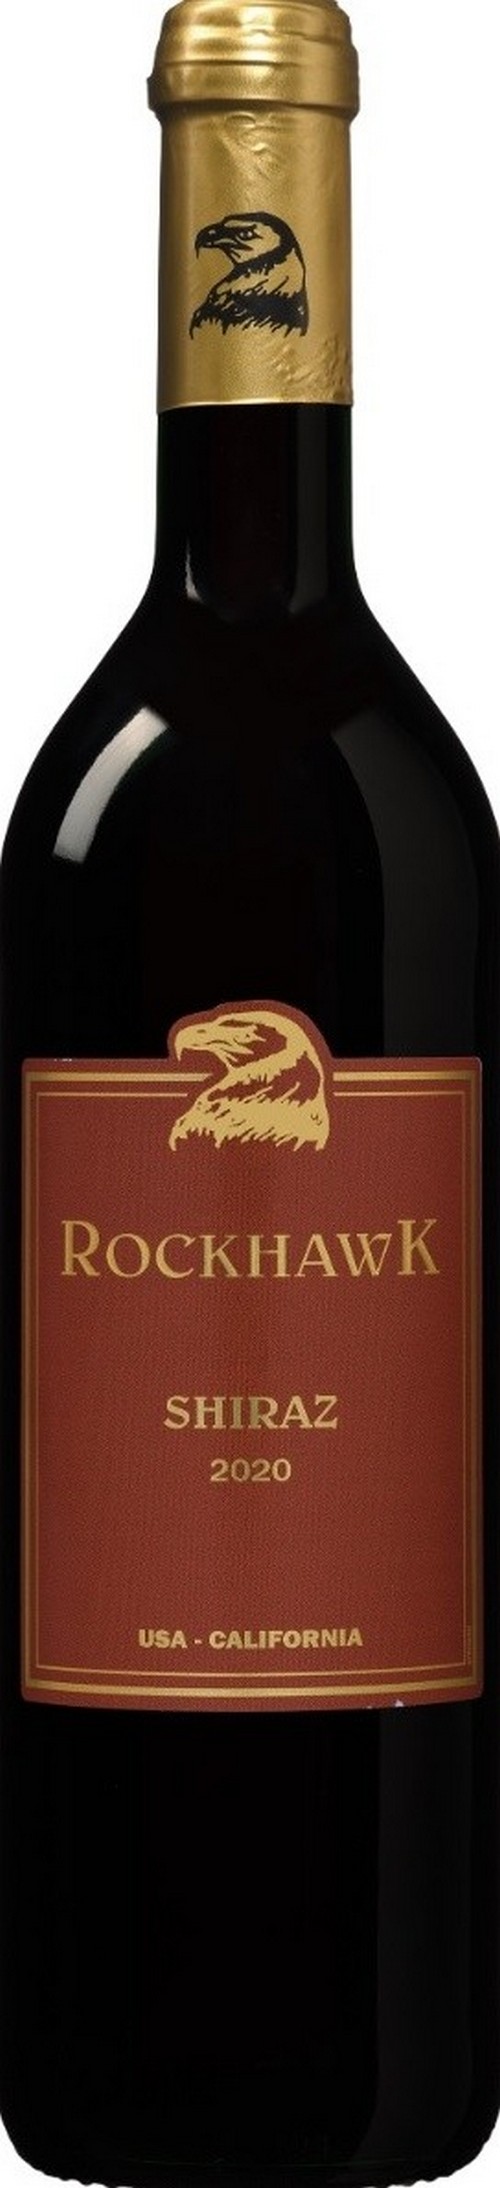 rockhawk-shiraz-california-2020